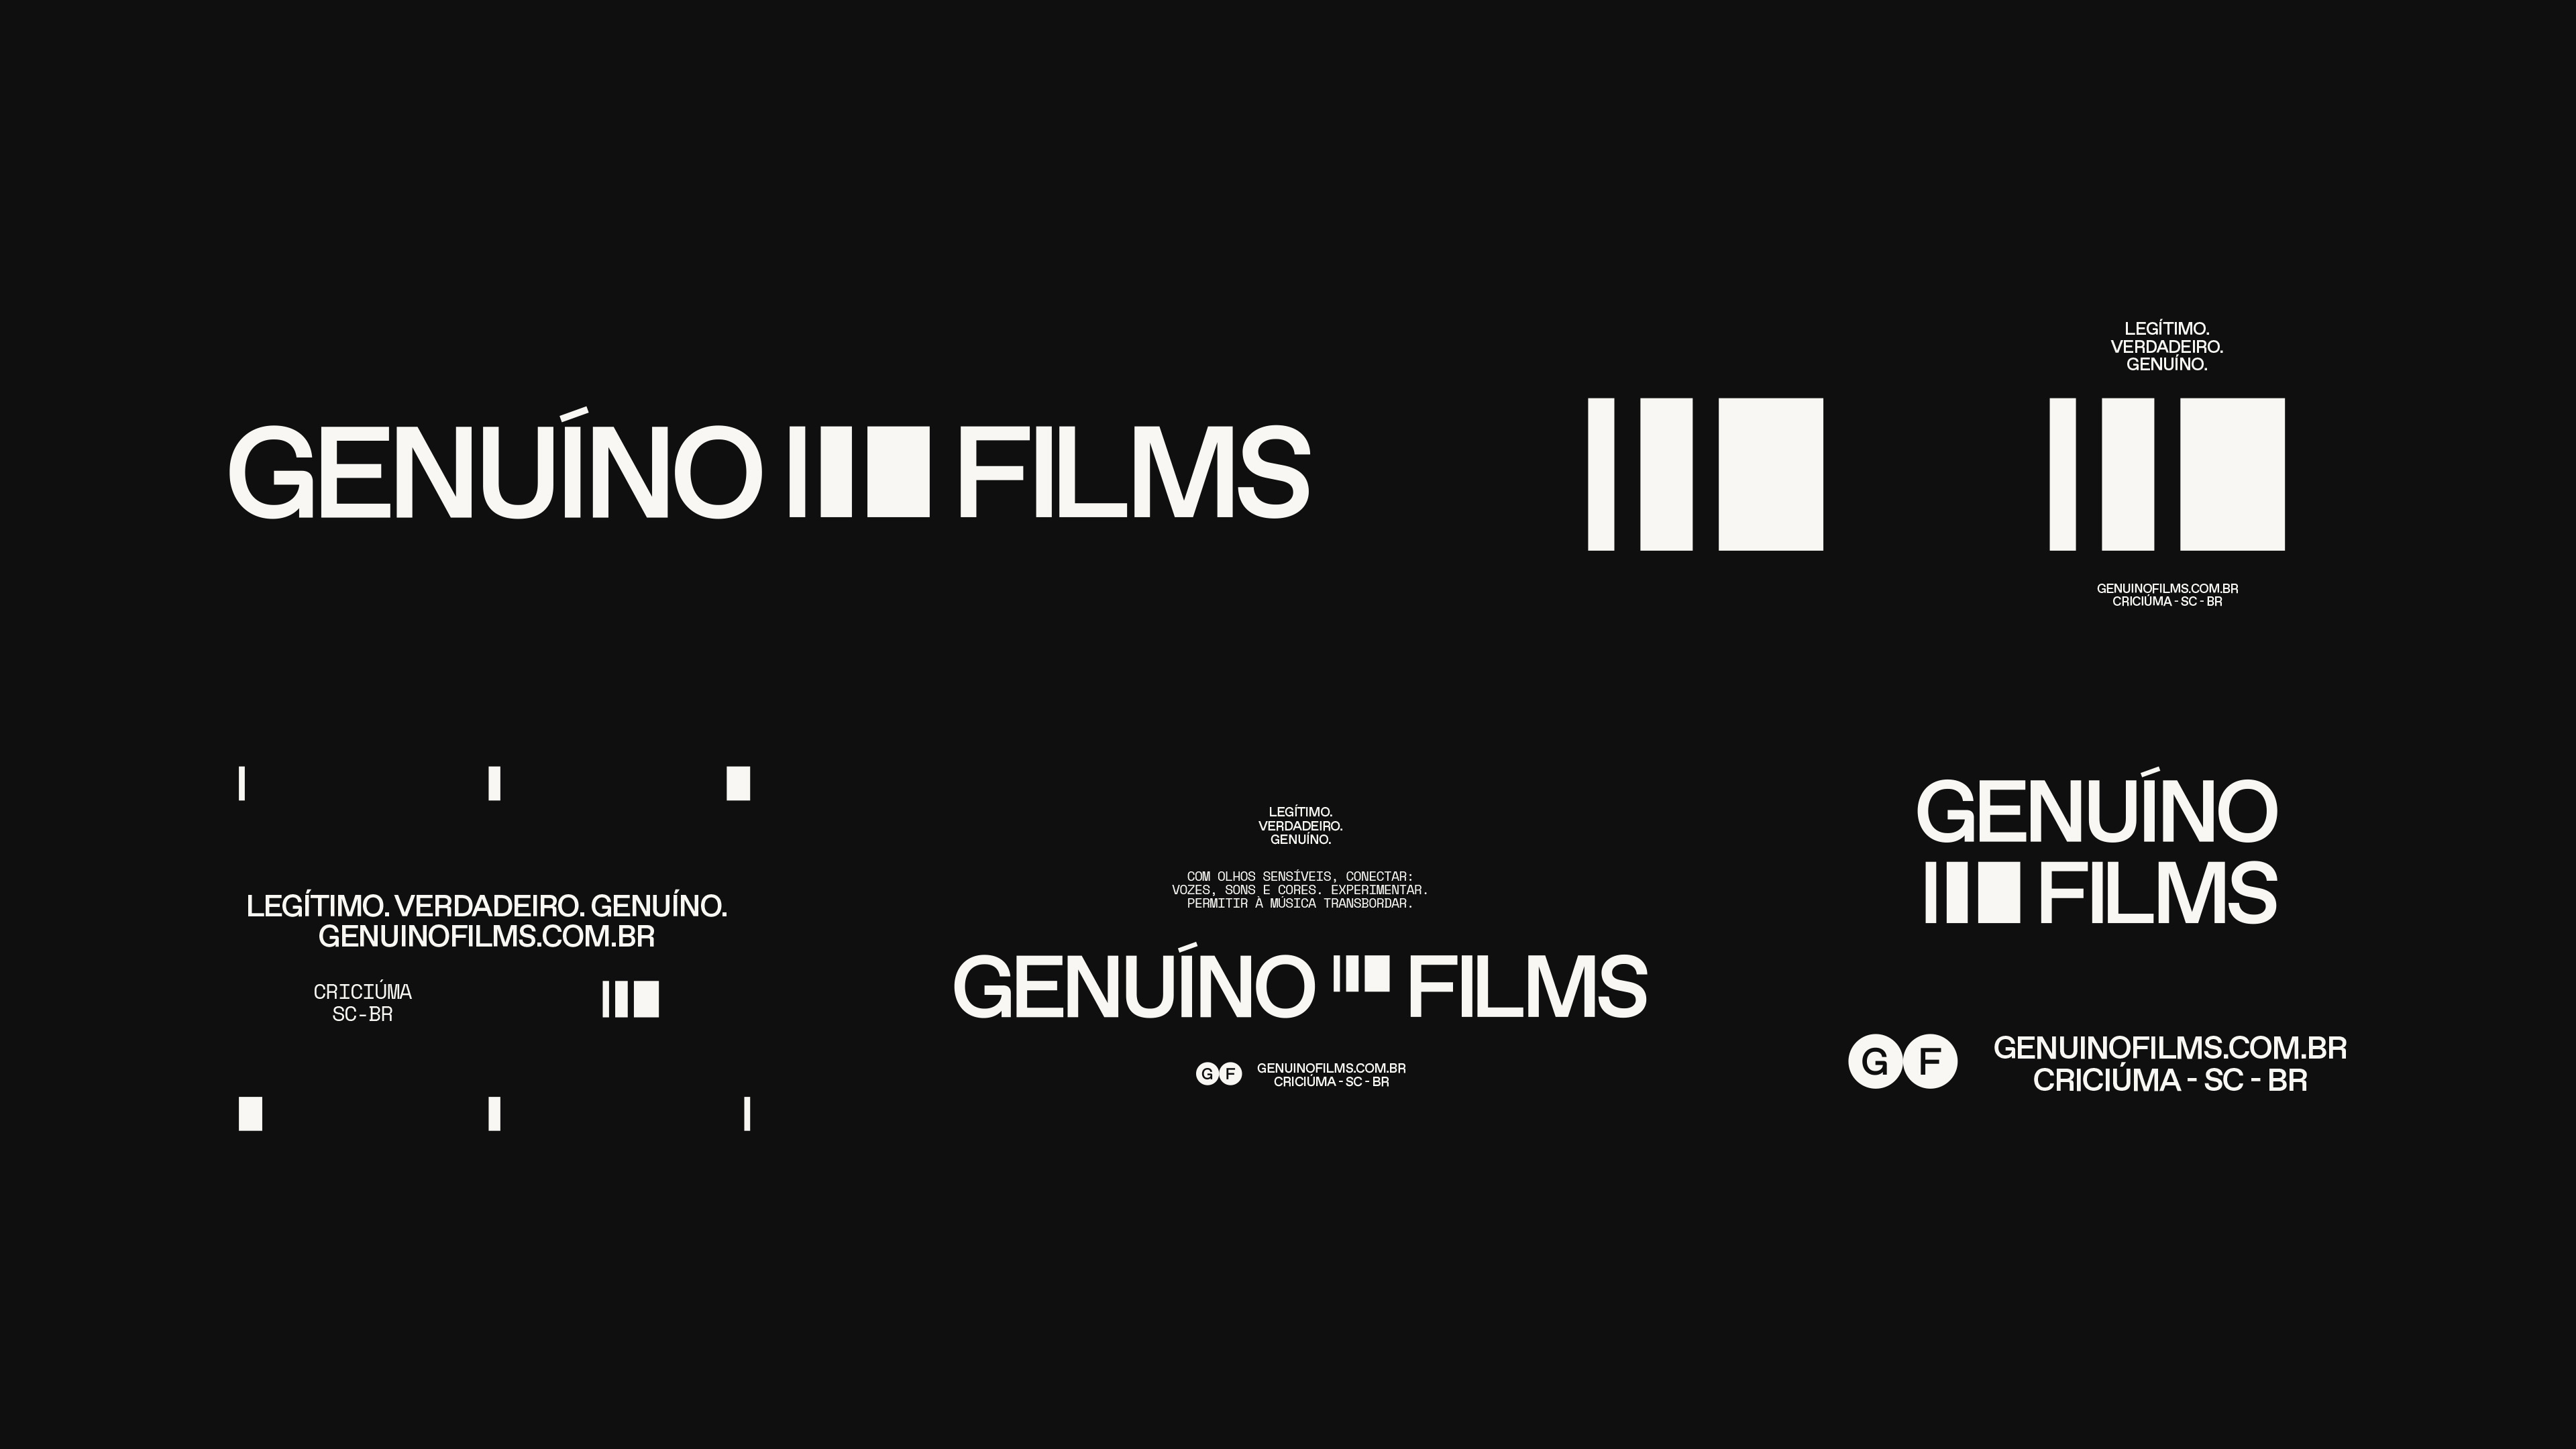 ceu-design_genuino-films_08